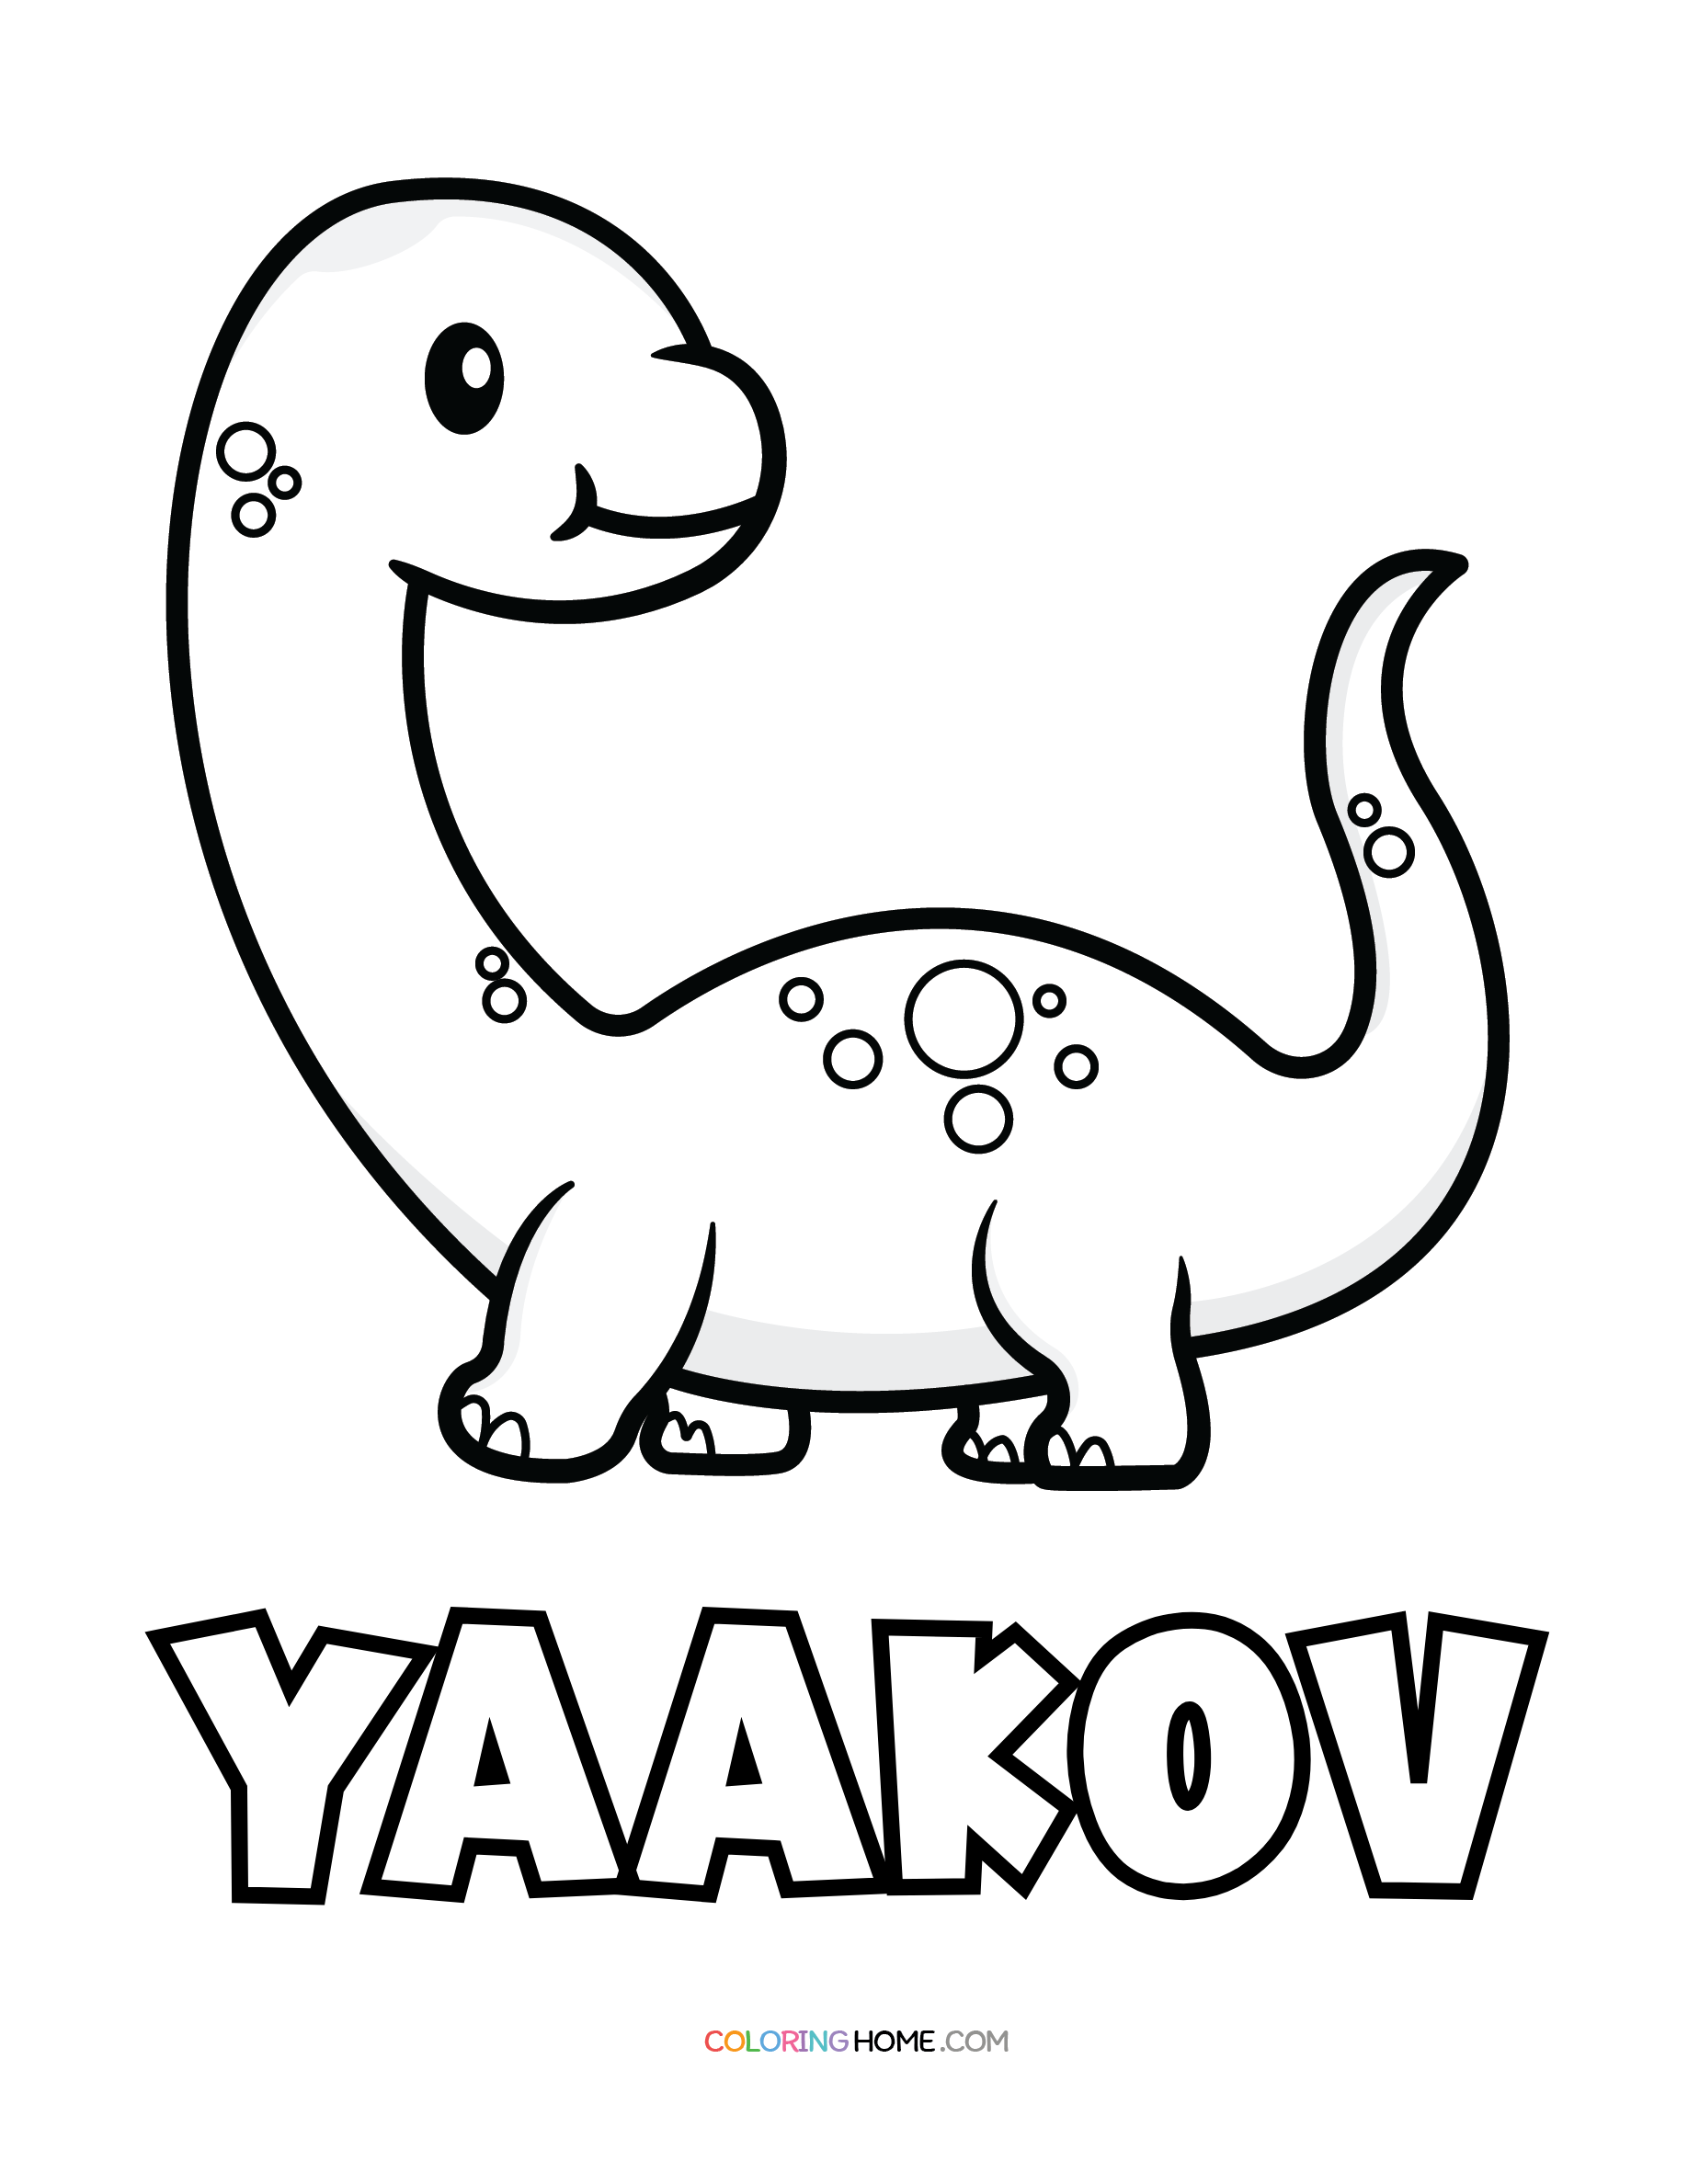 Yaakov dinosaur coloring page